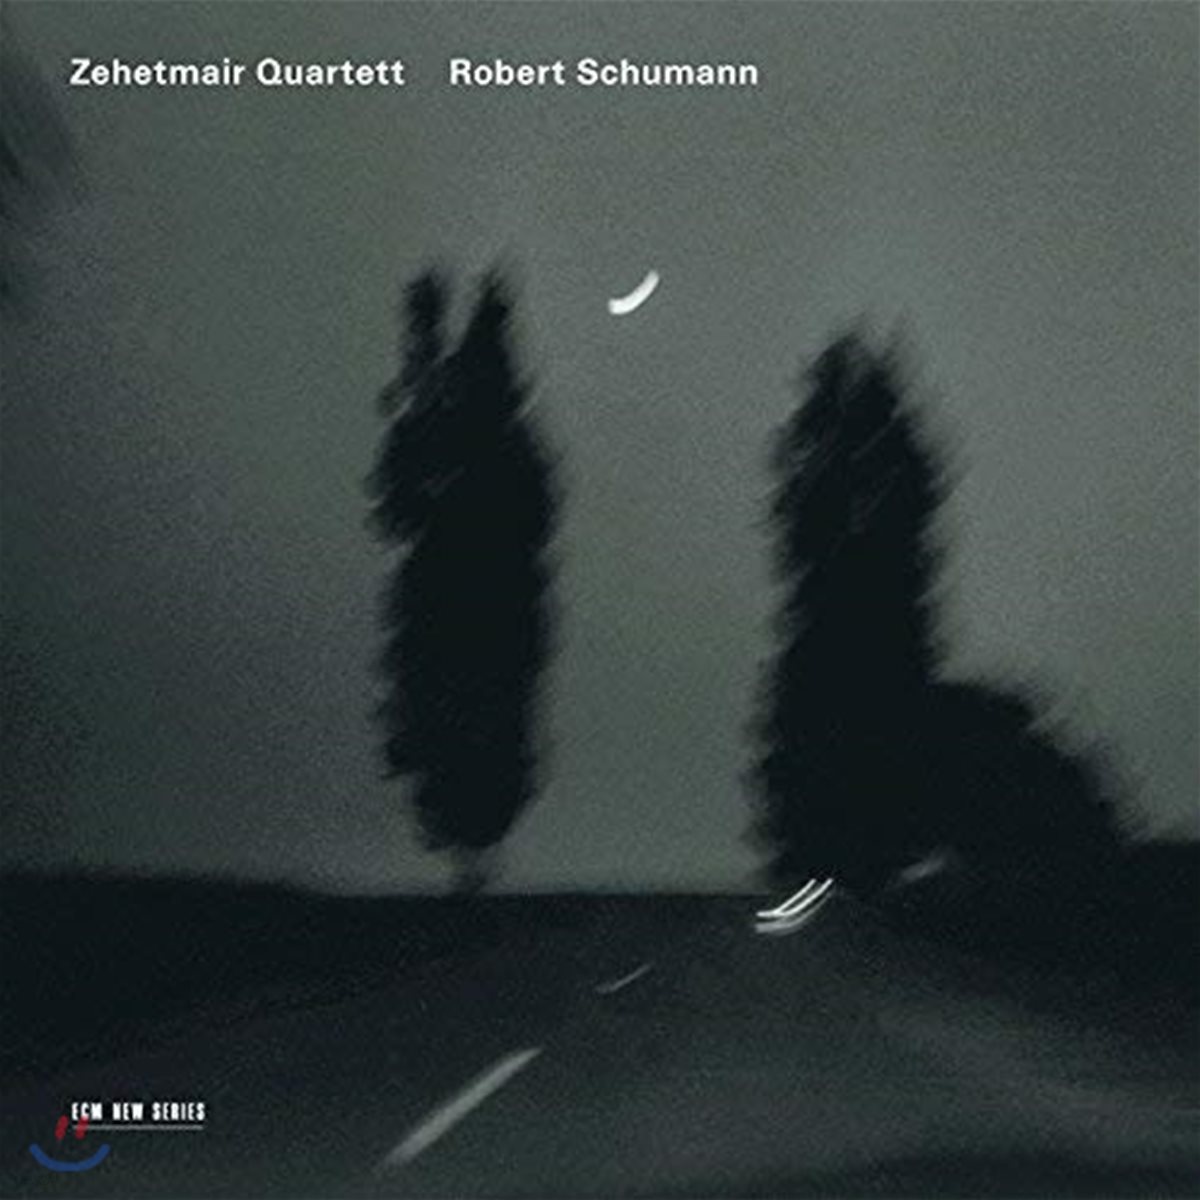 Zehetmair Quartett 슈만: 현악 사중주 (Schumann: String Quartets) 제헤트마이어 사중주단